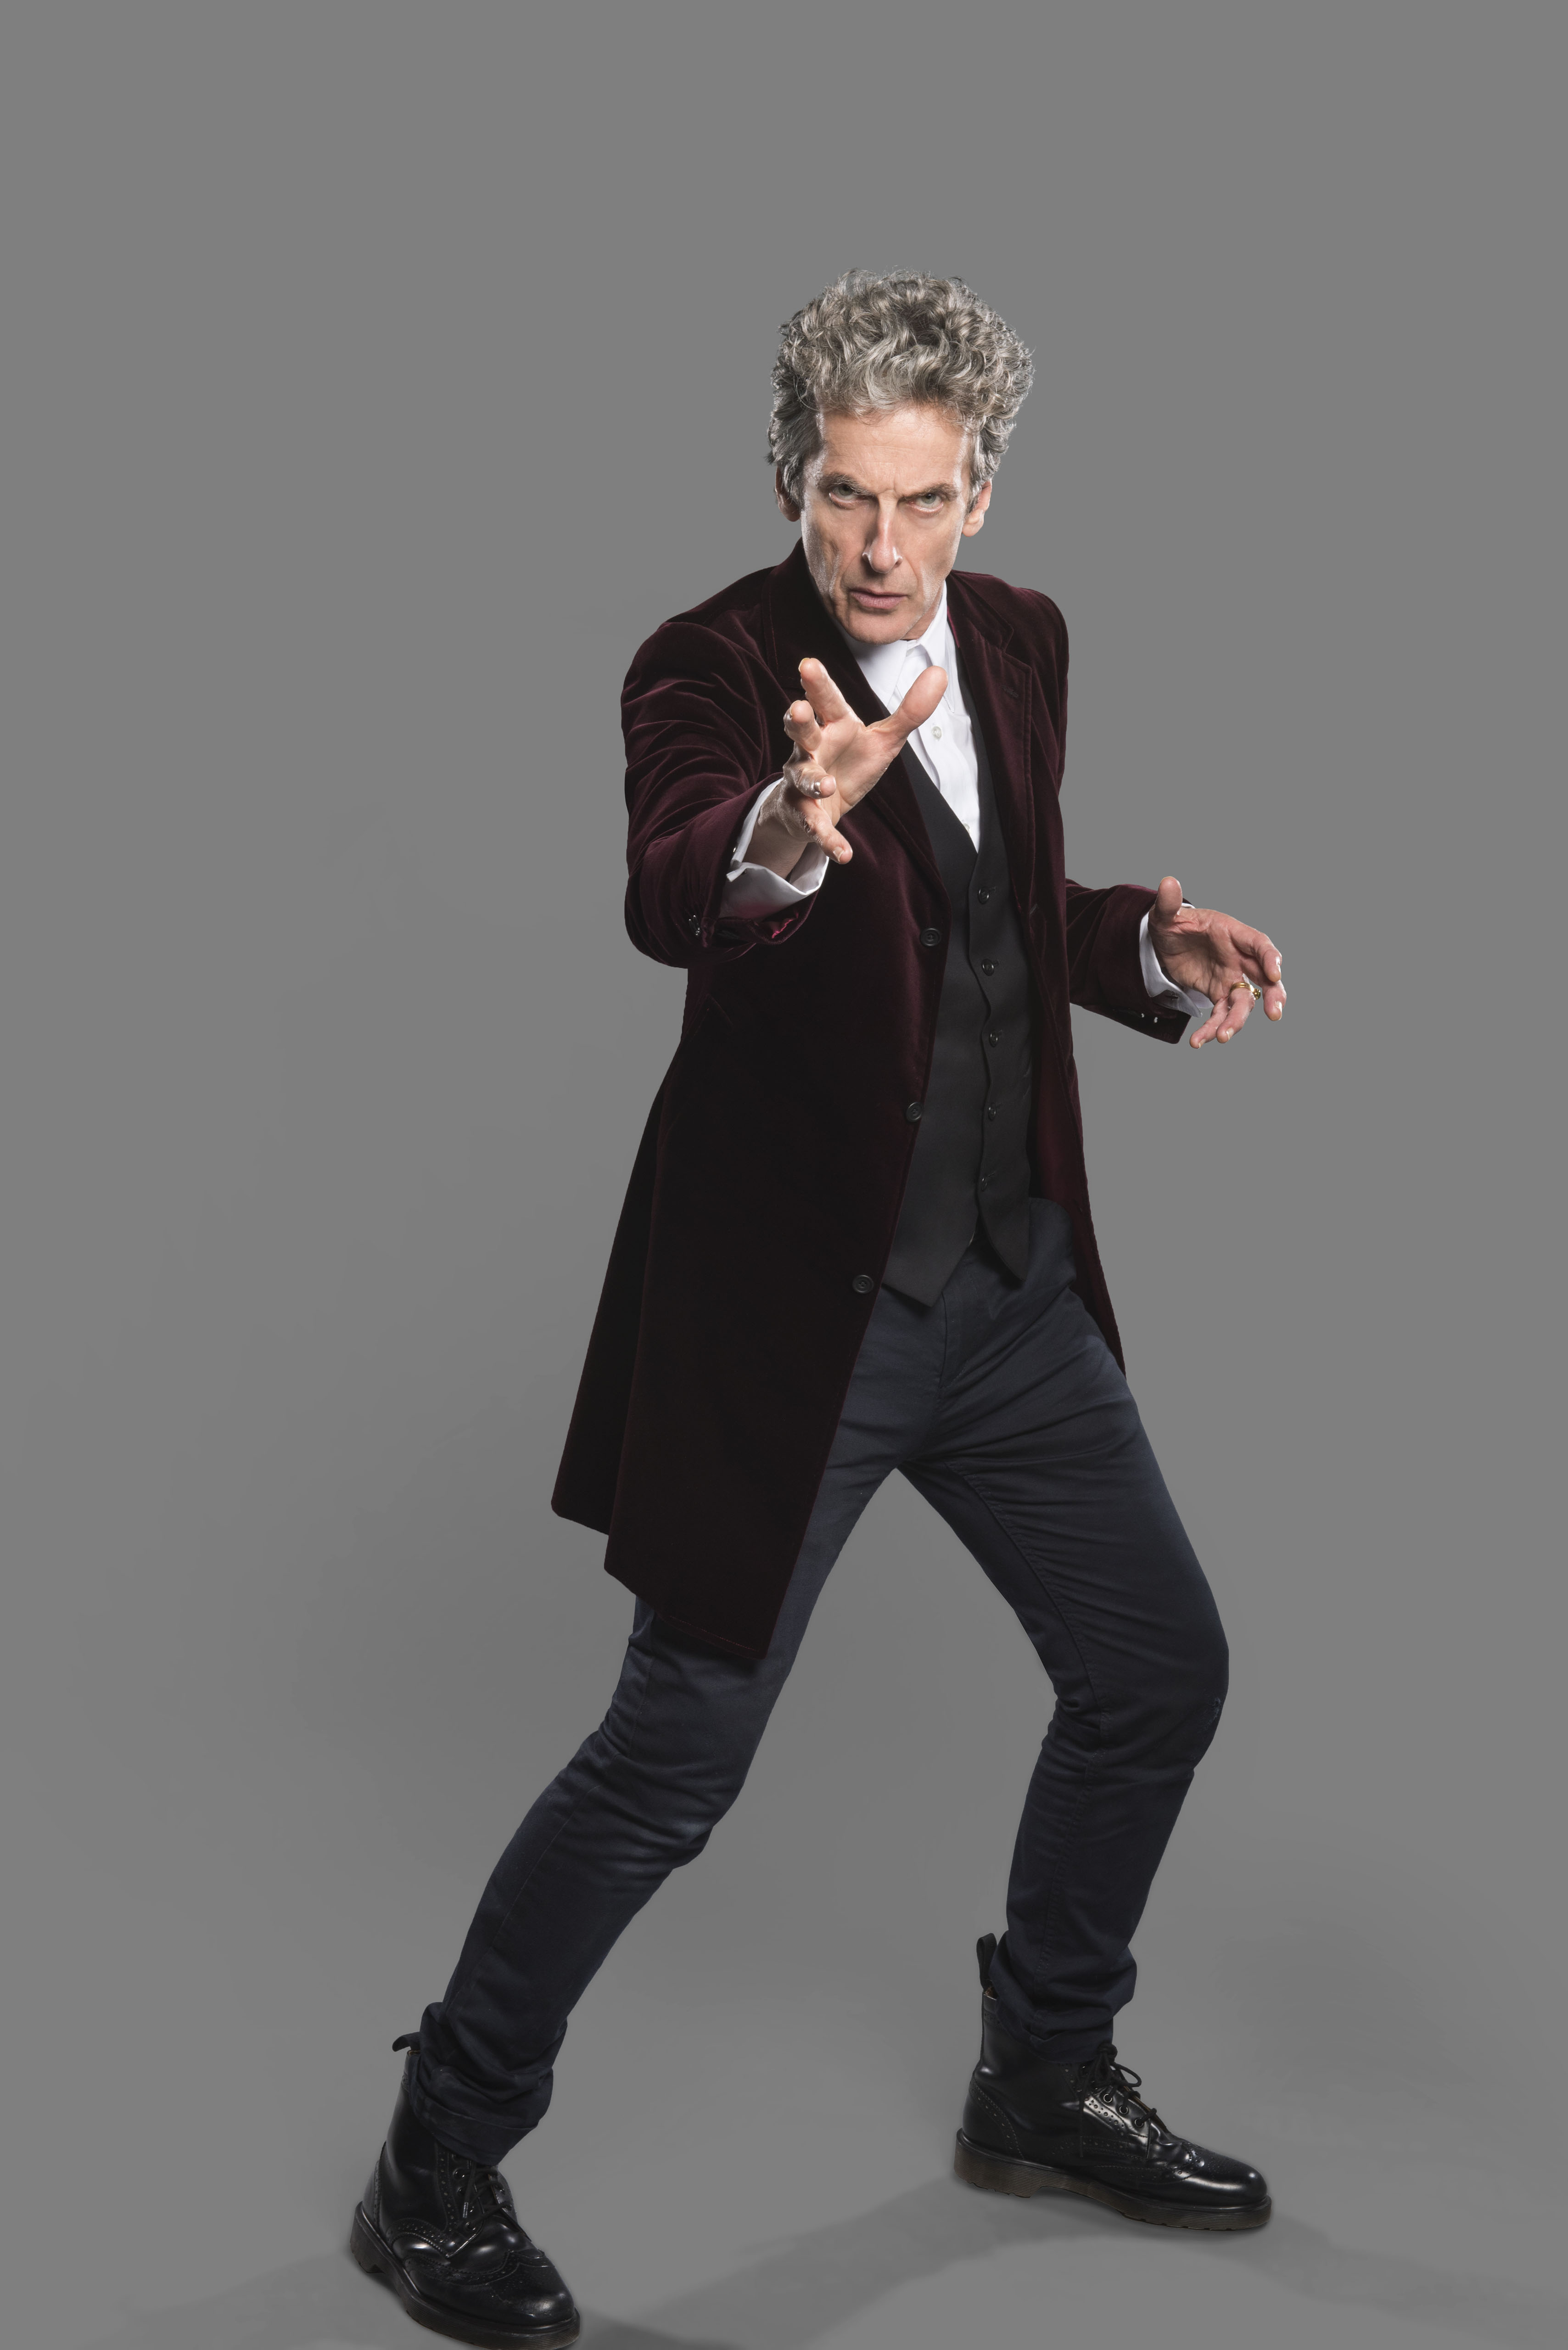 Peter Capaldi war beinahe gezwungen, sein Haus zu verkaufen, bevor er eine Rolle vor Doctor Who bekam